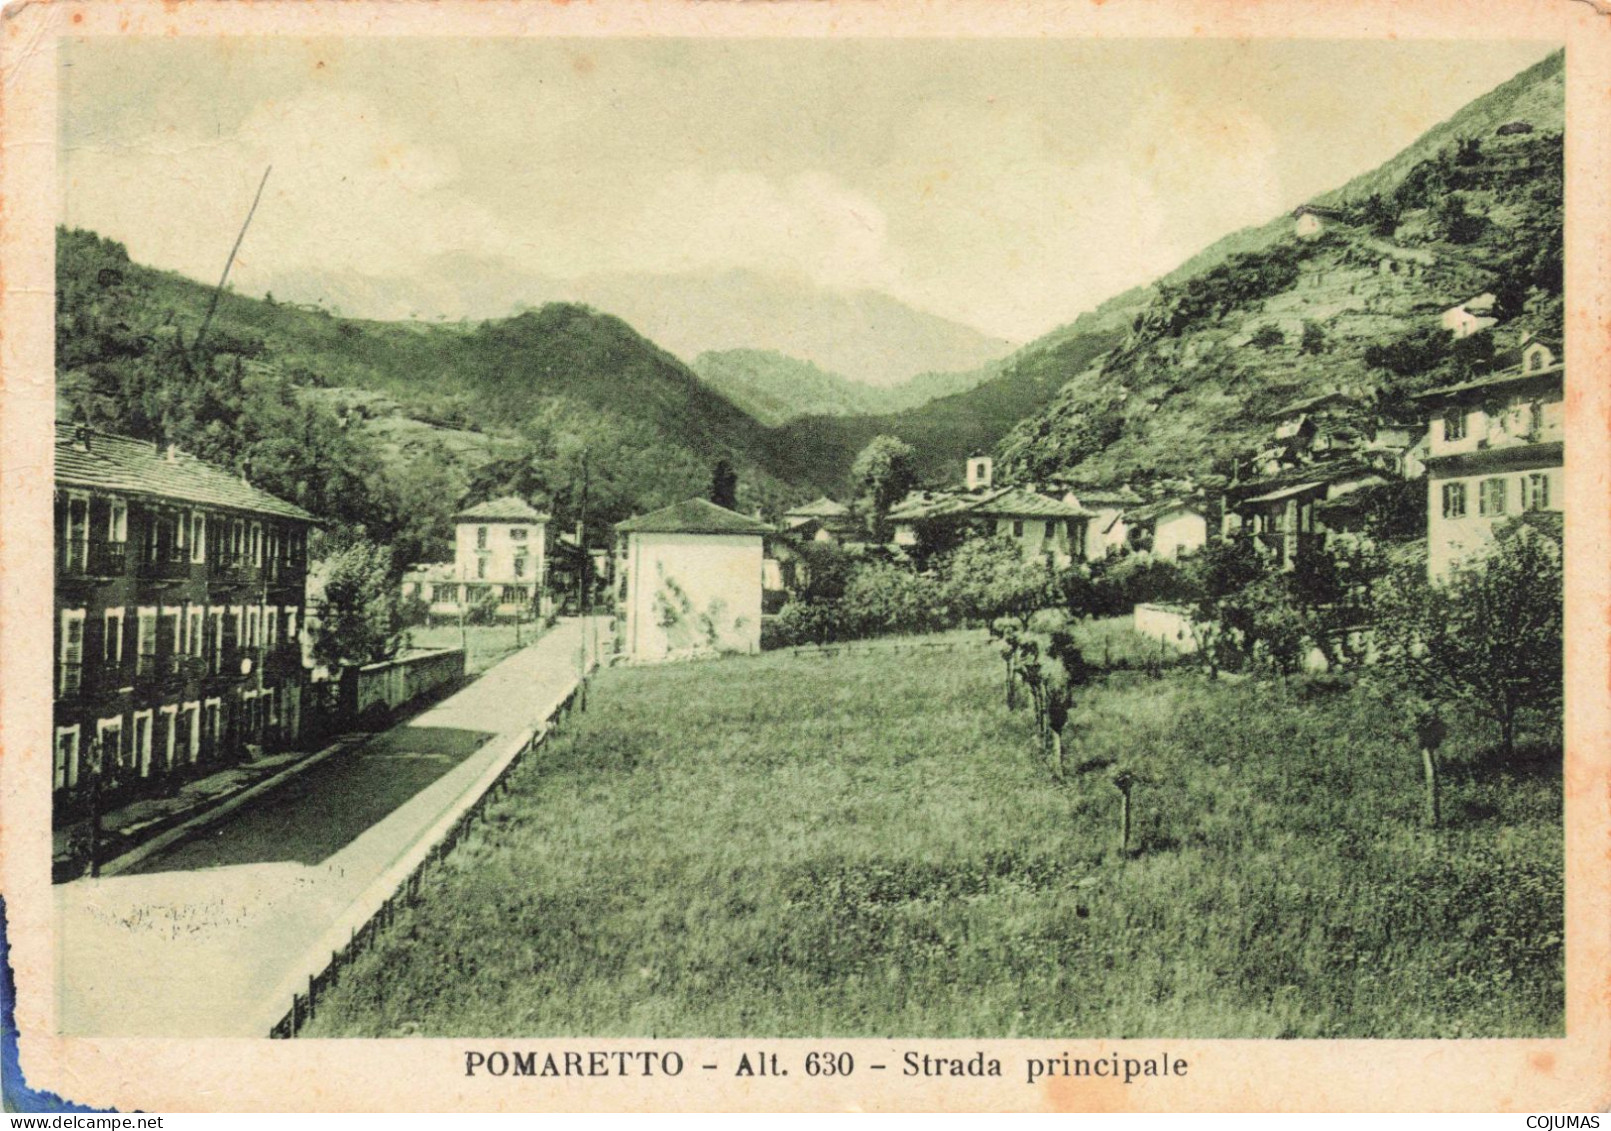 ITALIE - S18849 - Pomaretto - Strada Principale - 15x10 Cm - Andere Monumente & Gebäude